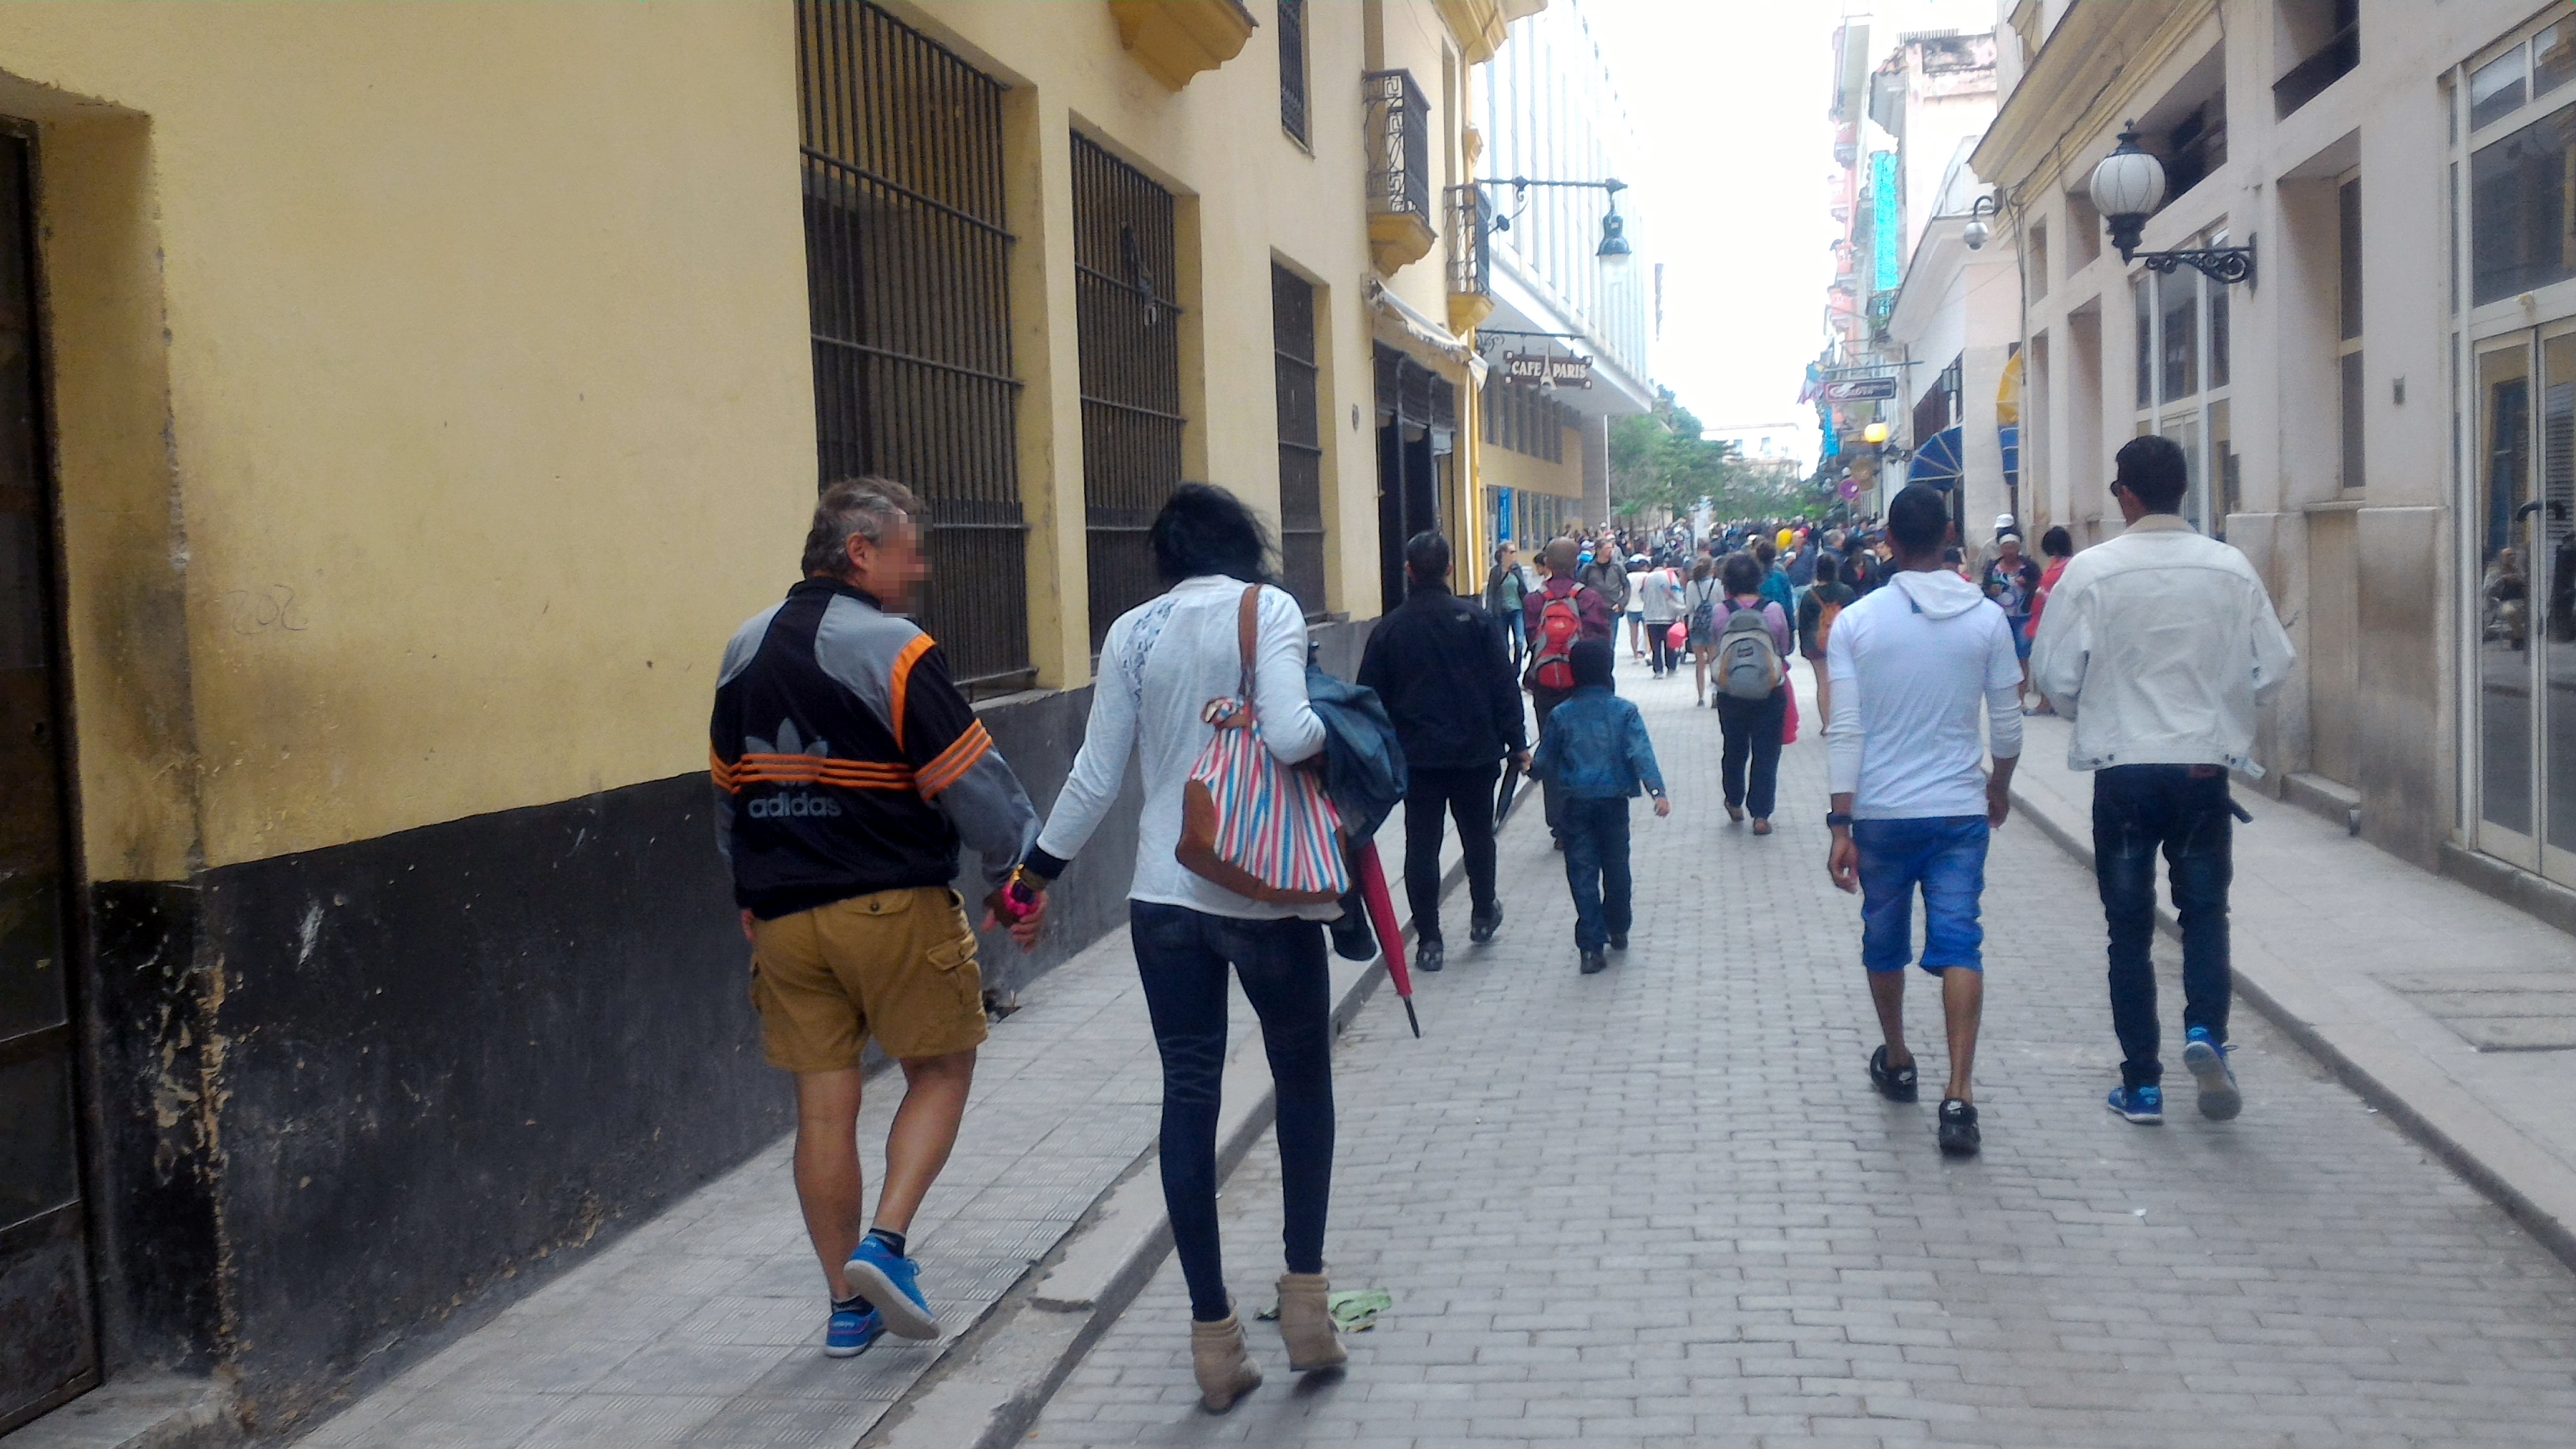 La clásica estampa del turista europeo de la mano de una jinetera en Centro Habana. (A. Pascual)